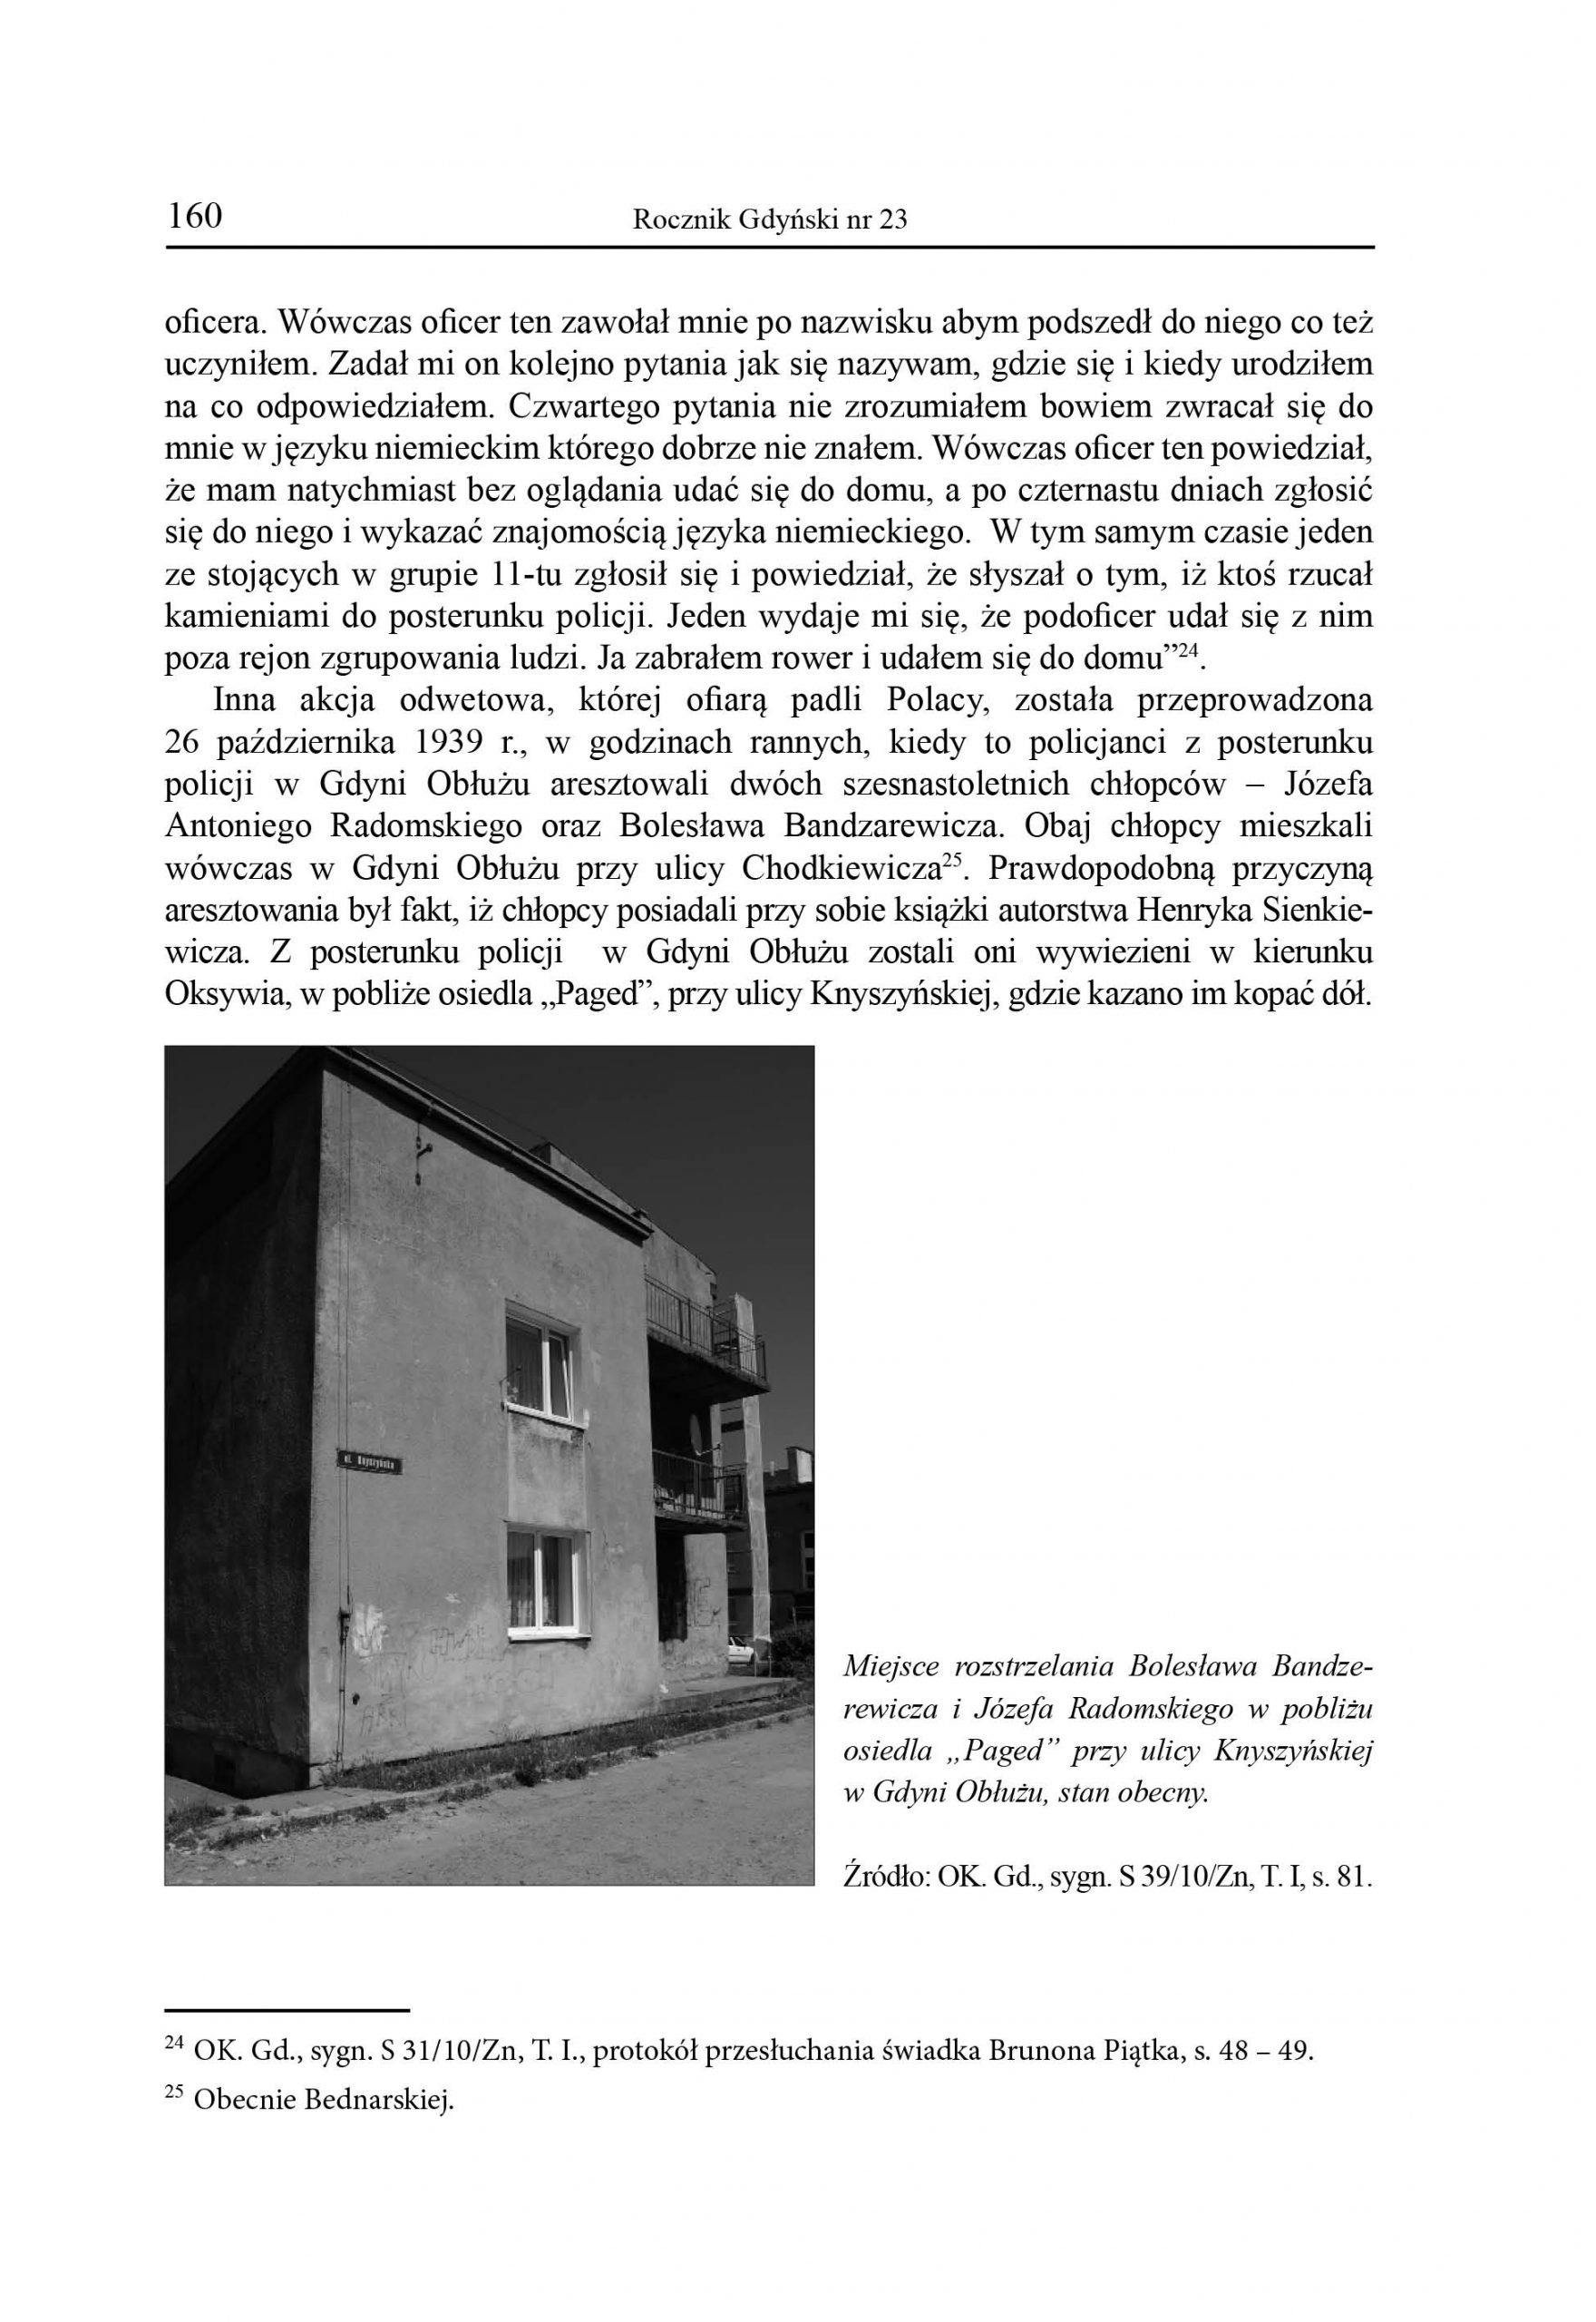 Akty terroru hitlerowskiego wobec ludności cywilnej w Gdyni Obłużu w pierwszych miesiącach okupacji